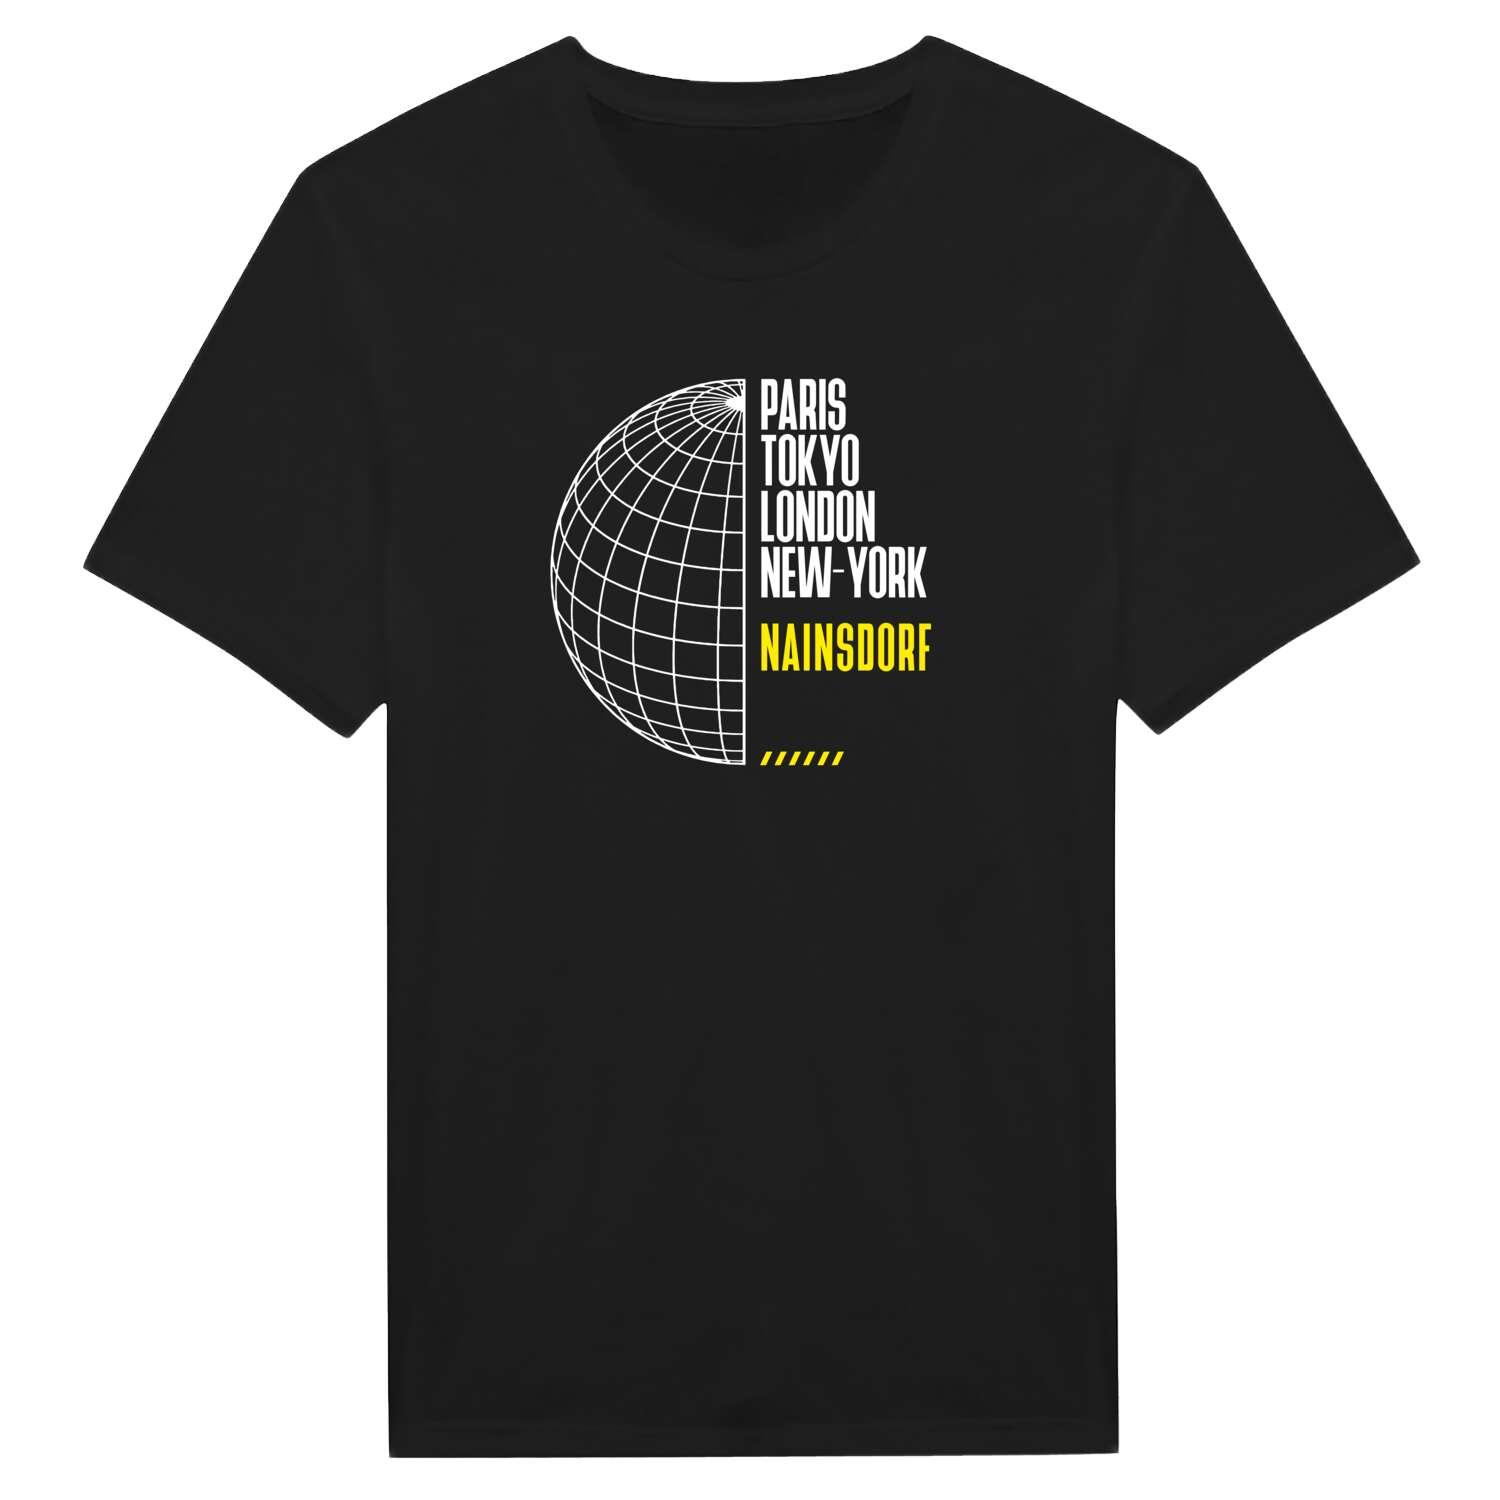 Nainsdorf T-Shirt »Paris Tokyo London«